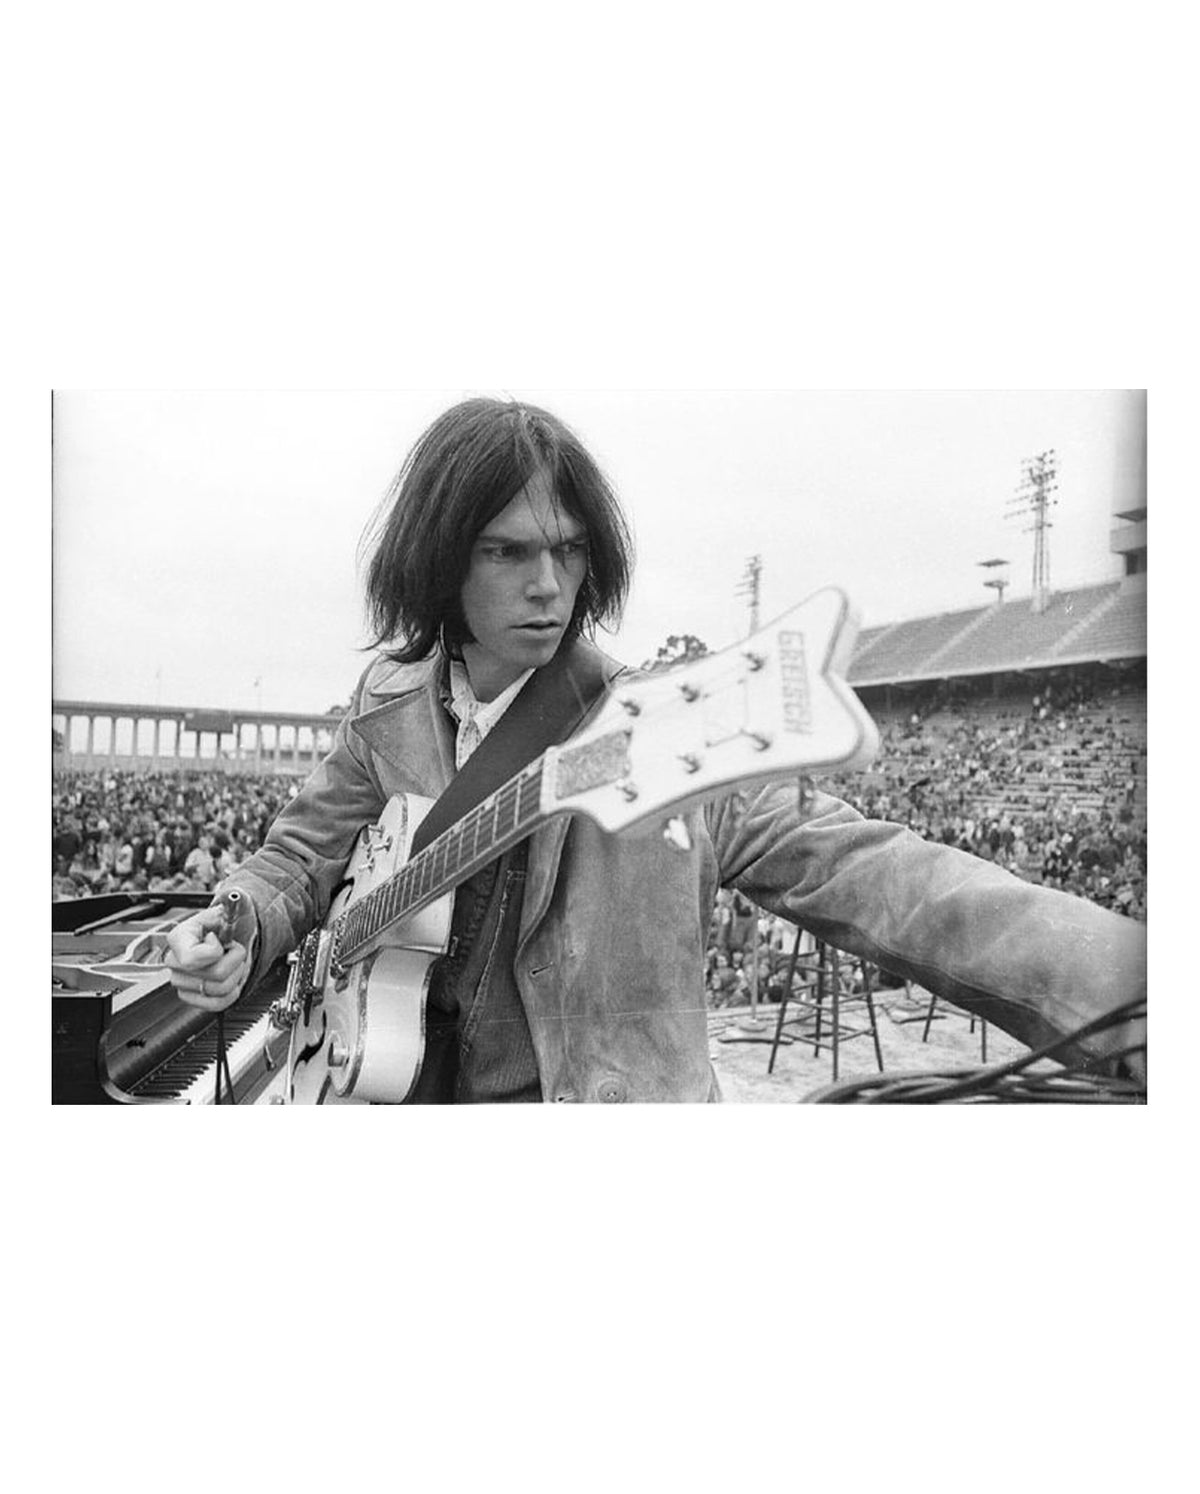 Neil Young, White Falcon, Balboa Stadium, 1969